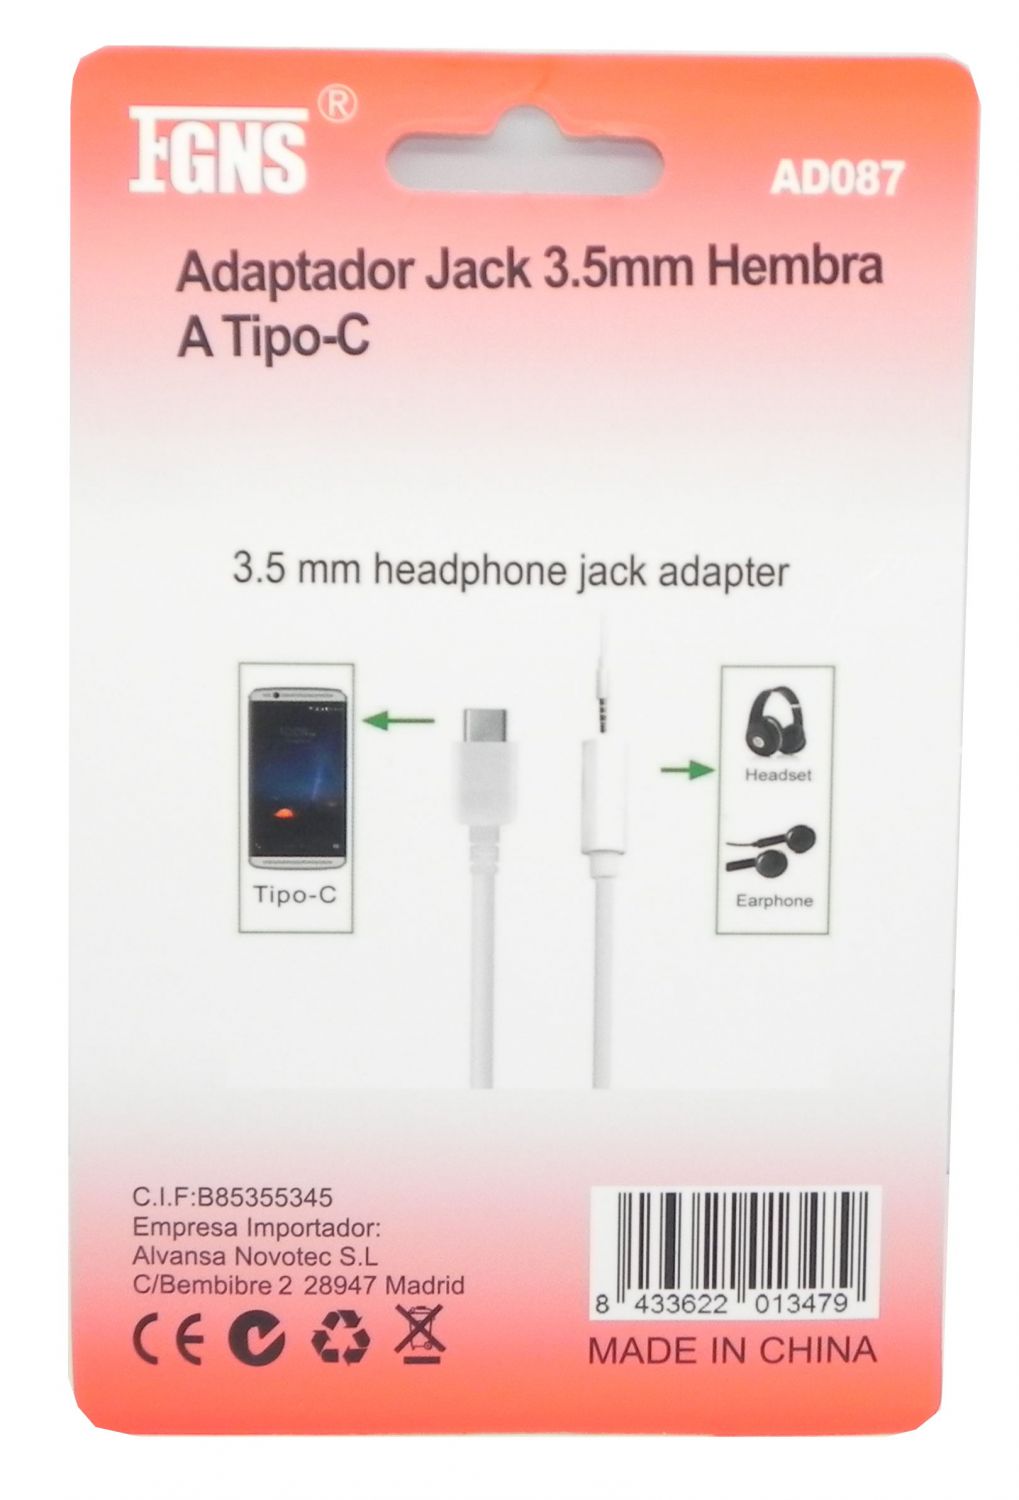 Adaptador Jack 3.5mm Hembra a Tipo C , AD087